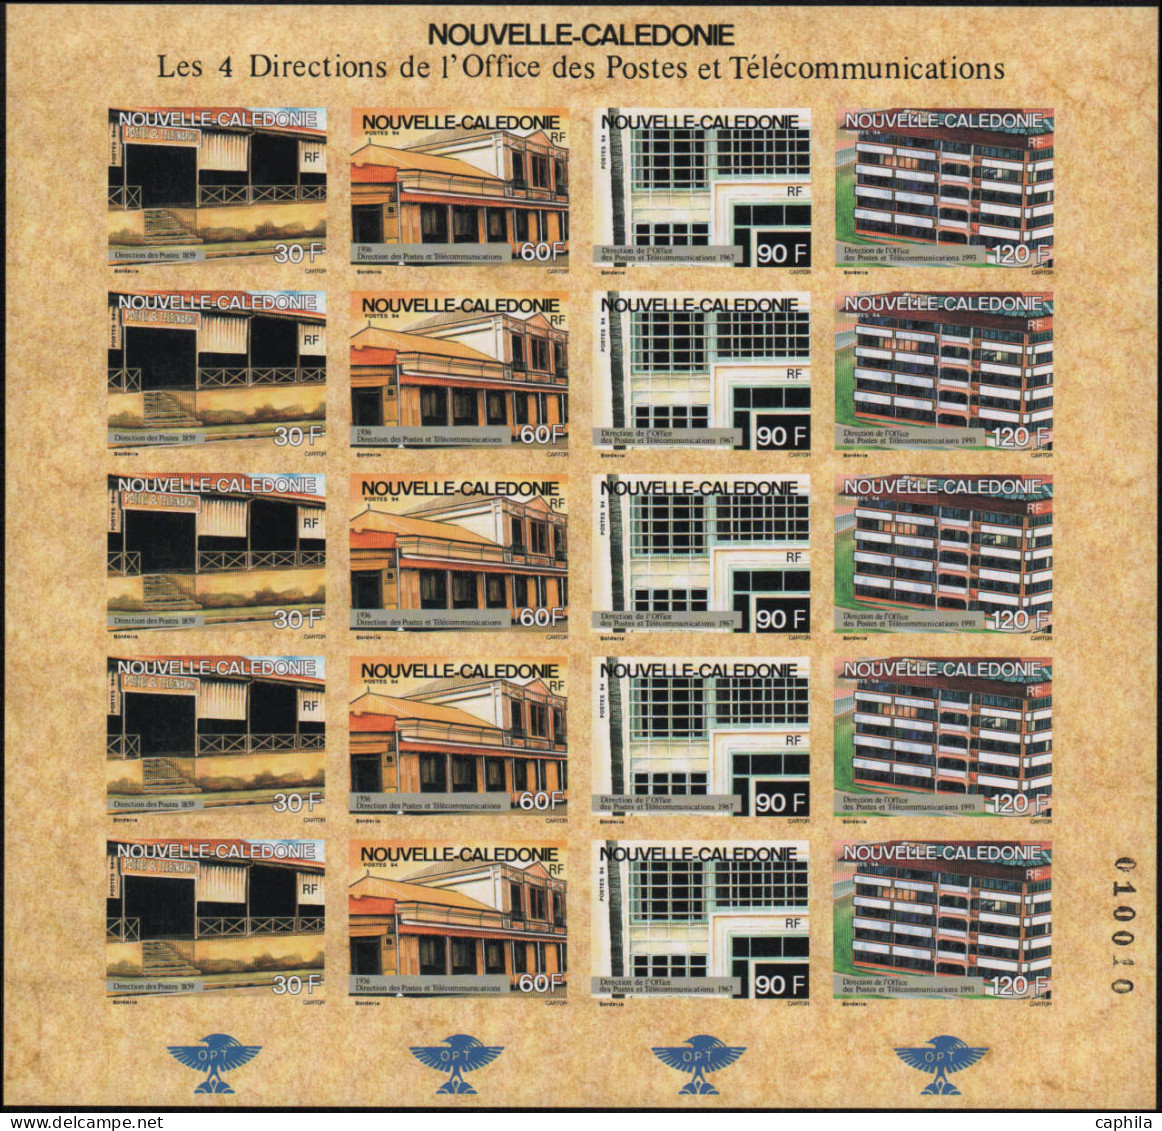 - NOUVELLE-CALEDONIE ND, 1983/1994, XX, ensemble en feuilles complètes, en pochette, cote Maury: 10 000 €